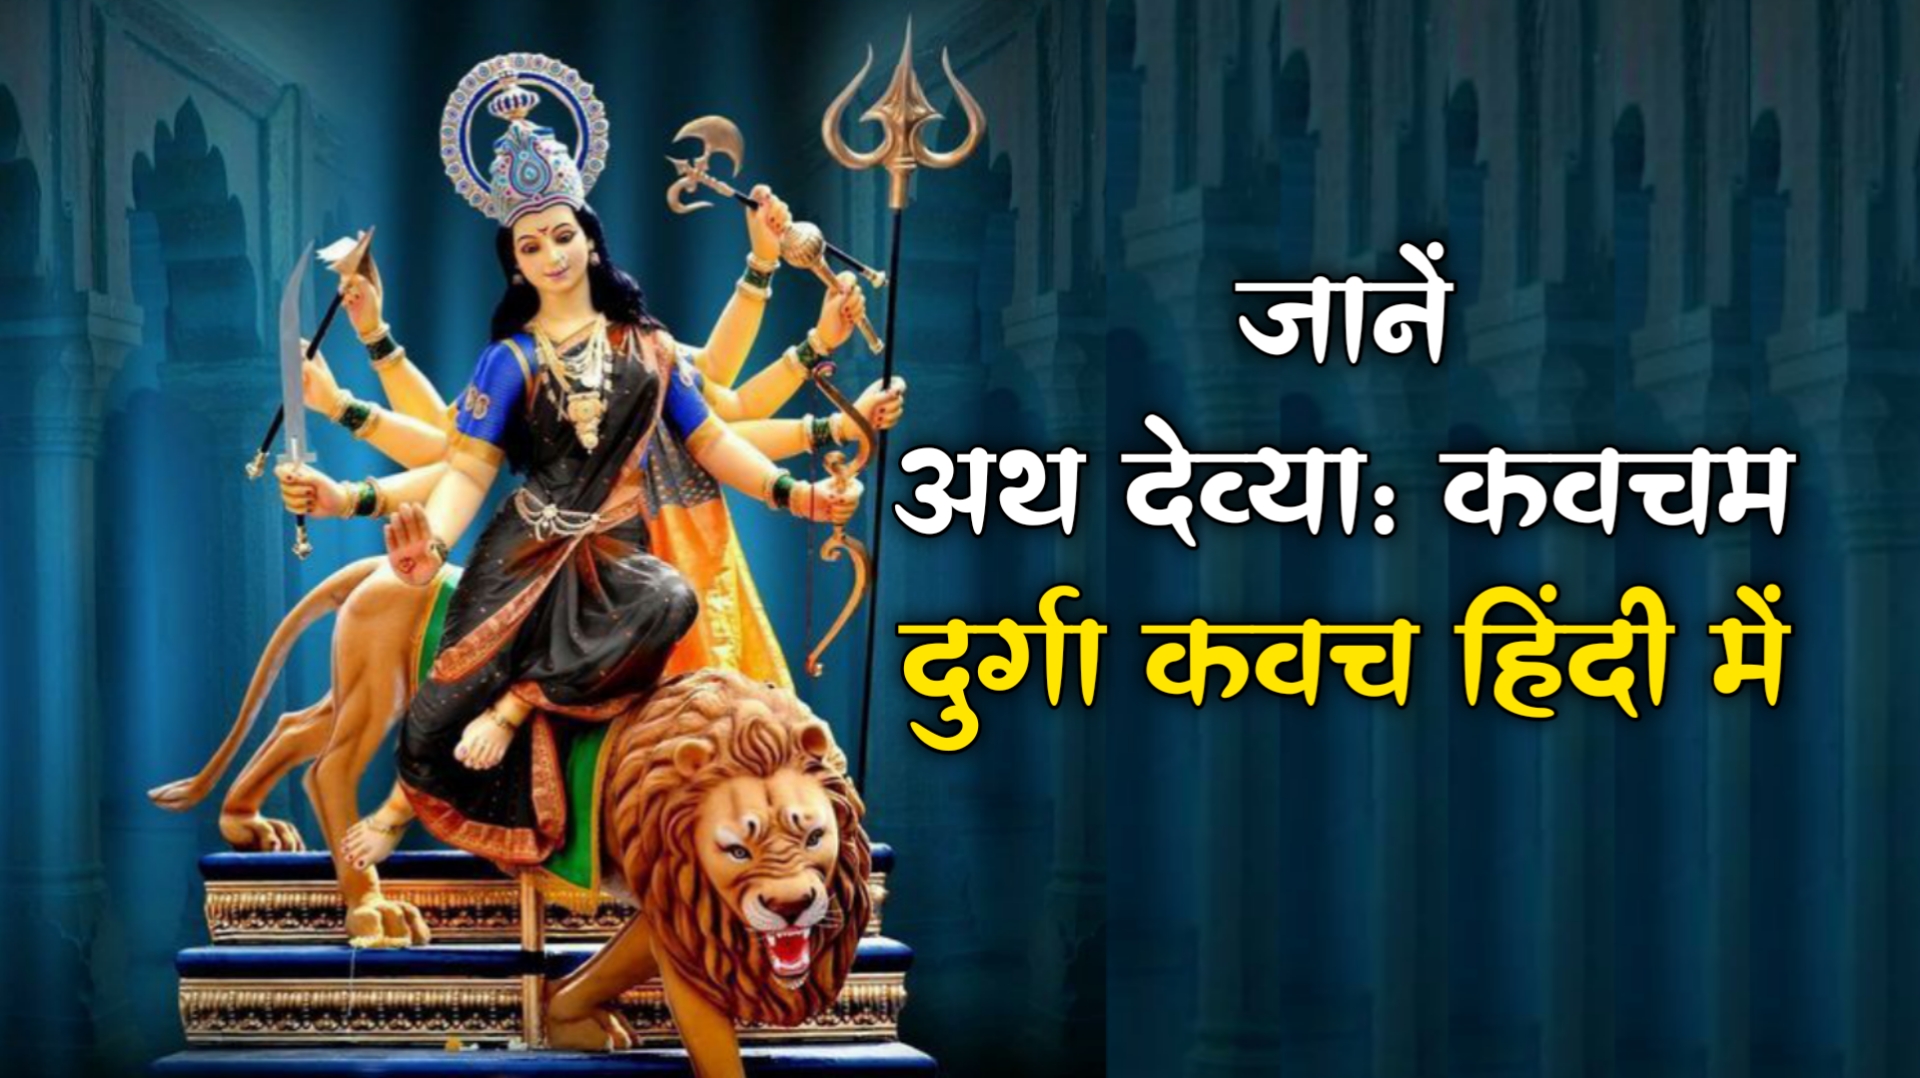 अथ देव्या कवचम: जानें Durga Kavach in Hindi माँ दुर्गा देवी कवच हिंदी में अर्थ सहित